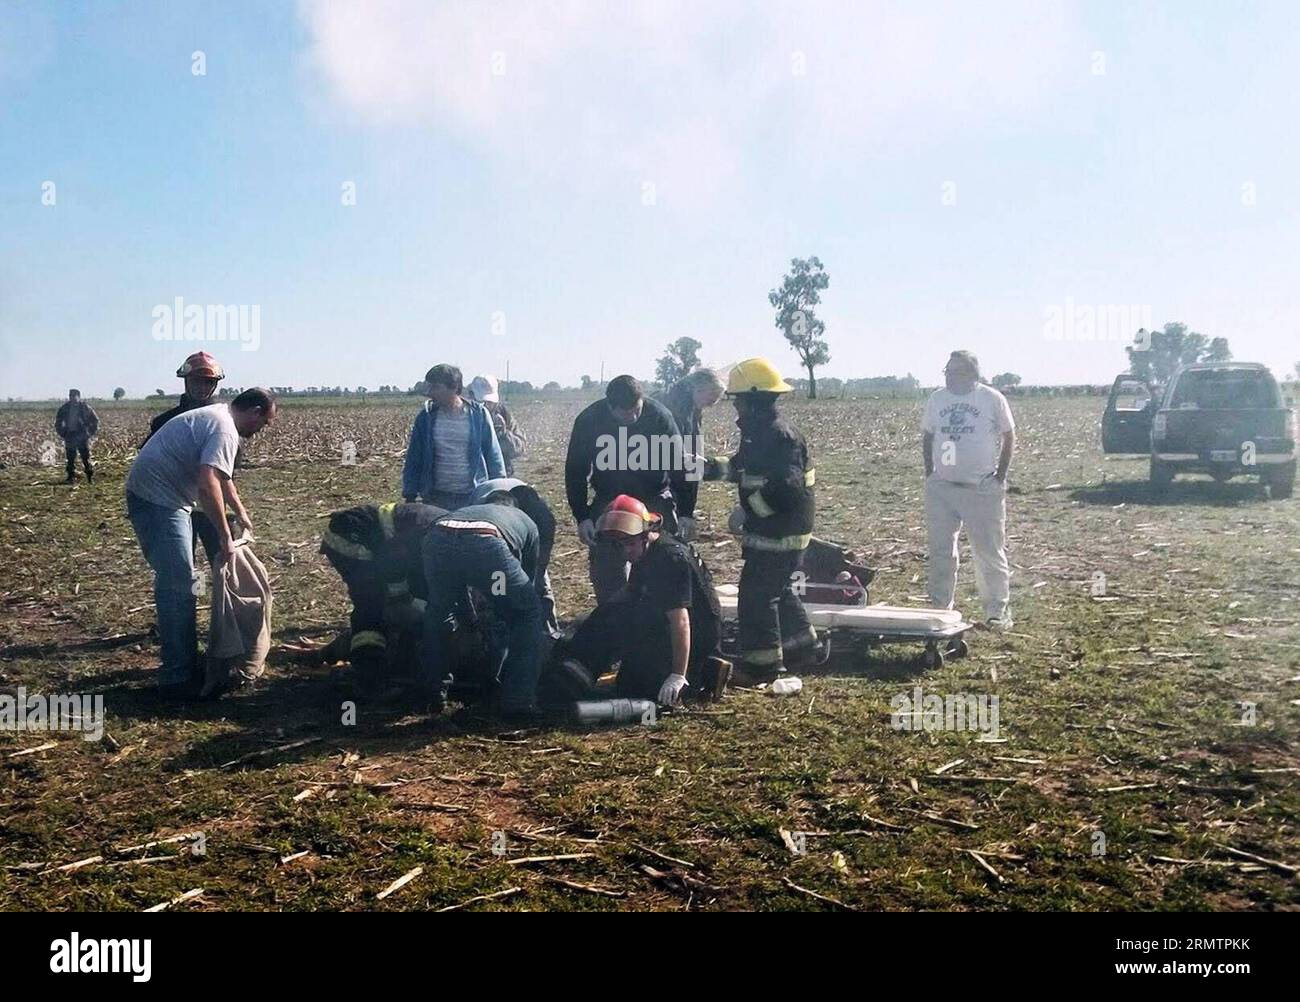 Un membro dell'equipaggio ferito riceve cure mediche dopo che il suo aereo si è schiantato vicino all'aeroporto del generale Villegas, 470 km a ovest di Buenos Aires, il 15 settembre 2014. Un piccolo aereo si è schiantato lunedì vicino all'aeroporto del generale Villegas, ferendo i suoi due membri dell'equipaggio in varie parti. ) ARGENTINA-BUENOS AIRES-INCIDENTE-AEREO TELAM PUBLICATIONxNOTxINxCHN al membro dell'equipaggio ferito riceve cure mediche dopo che il suo aereo si è schiantato vicino all'aeroporto del generale Villegas 470 km A OVEST di Buenos Aires IL 15 settembre 2014 un piccolo aereo si è schiantato lunedì vicino all'aeroporto del generale Villegas ferendo i suoi due membri dell'equipaggio a. Foto Stock